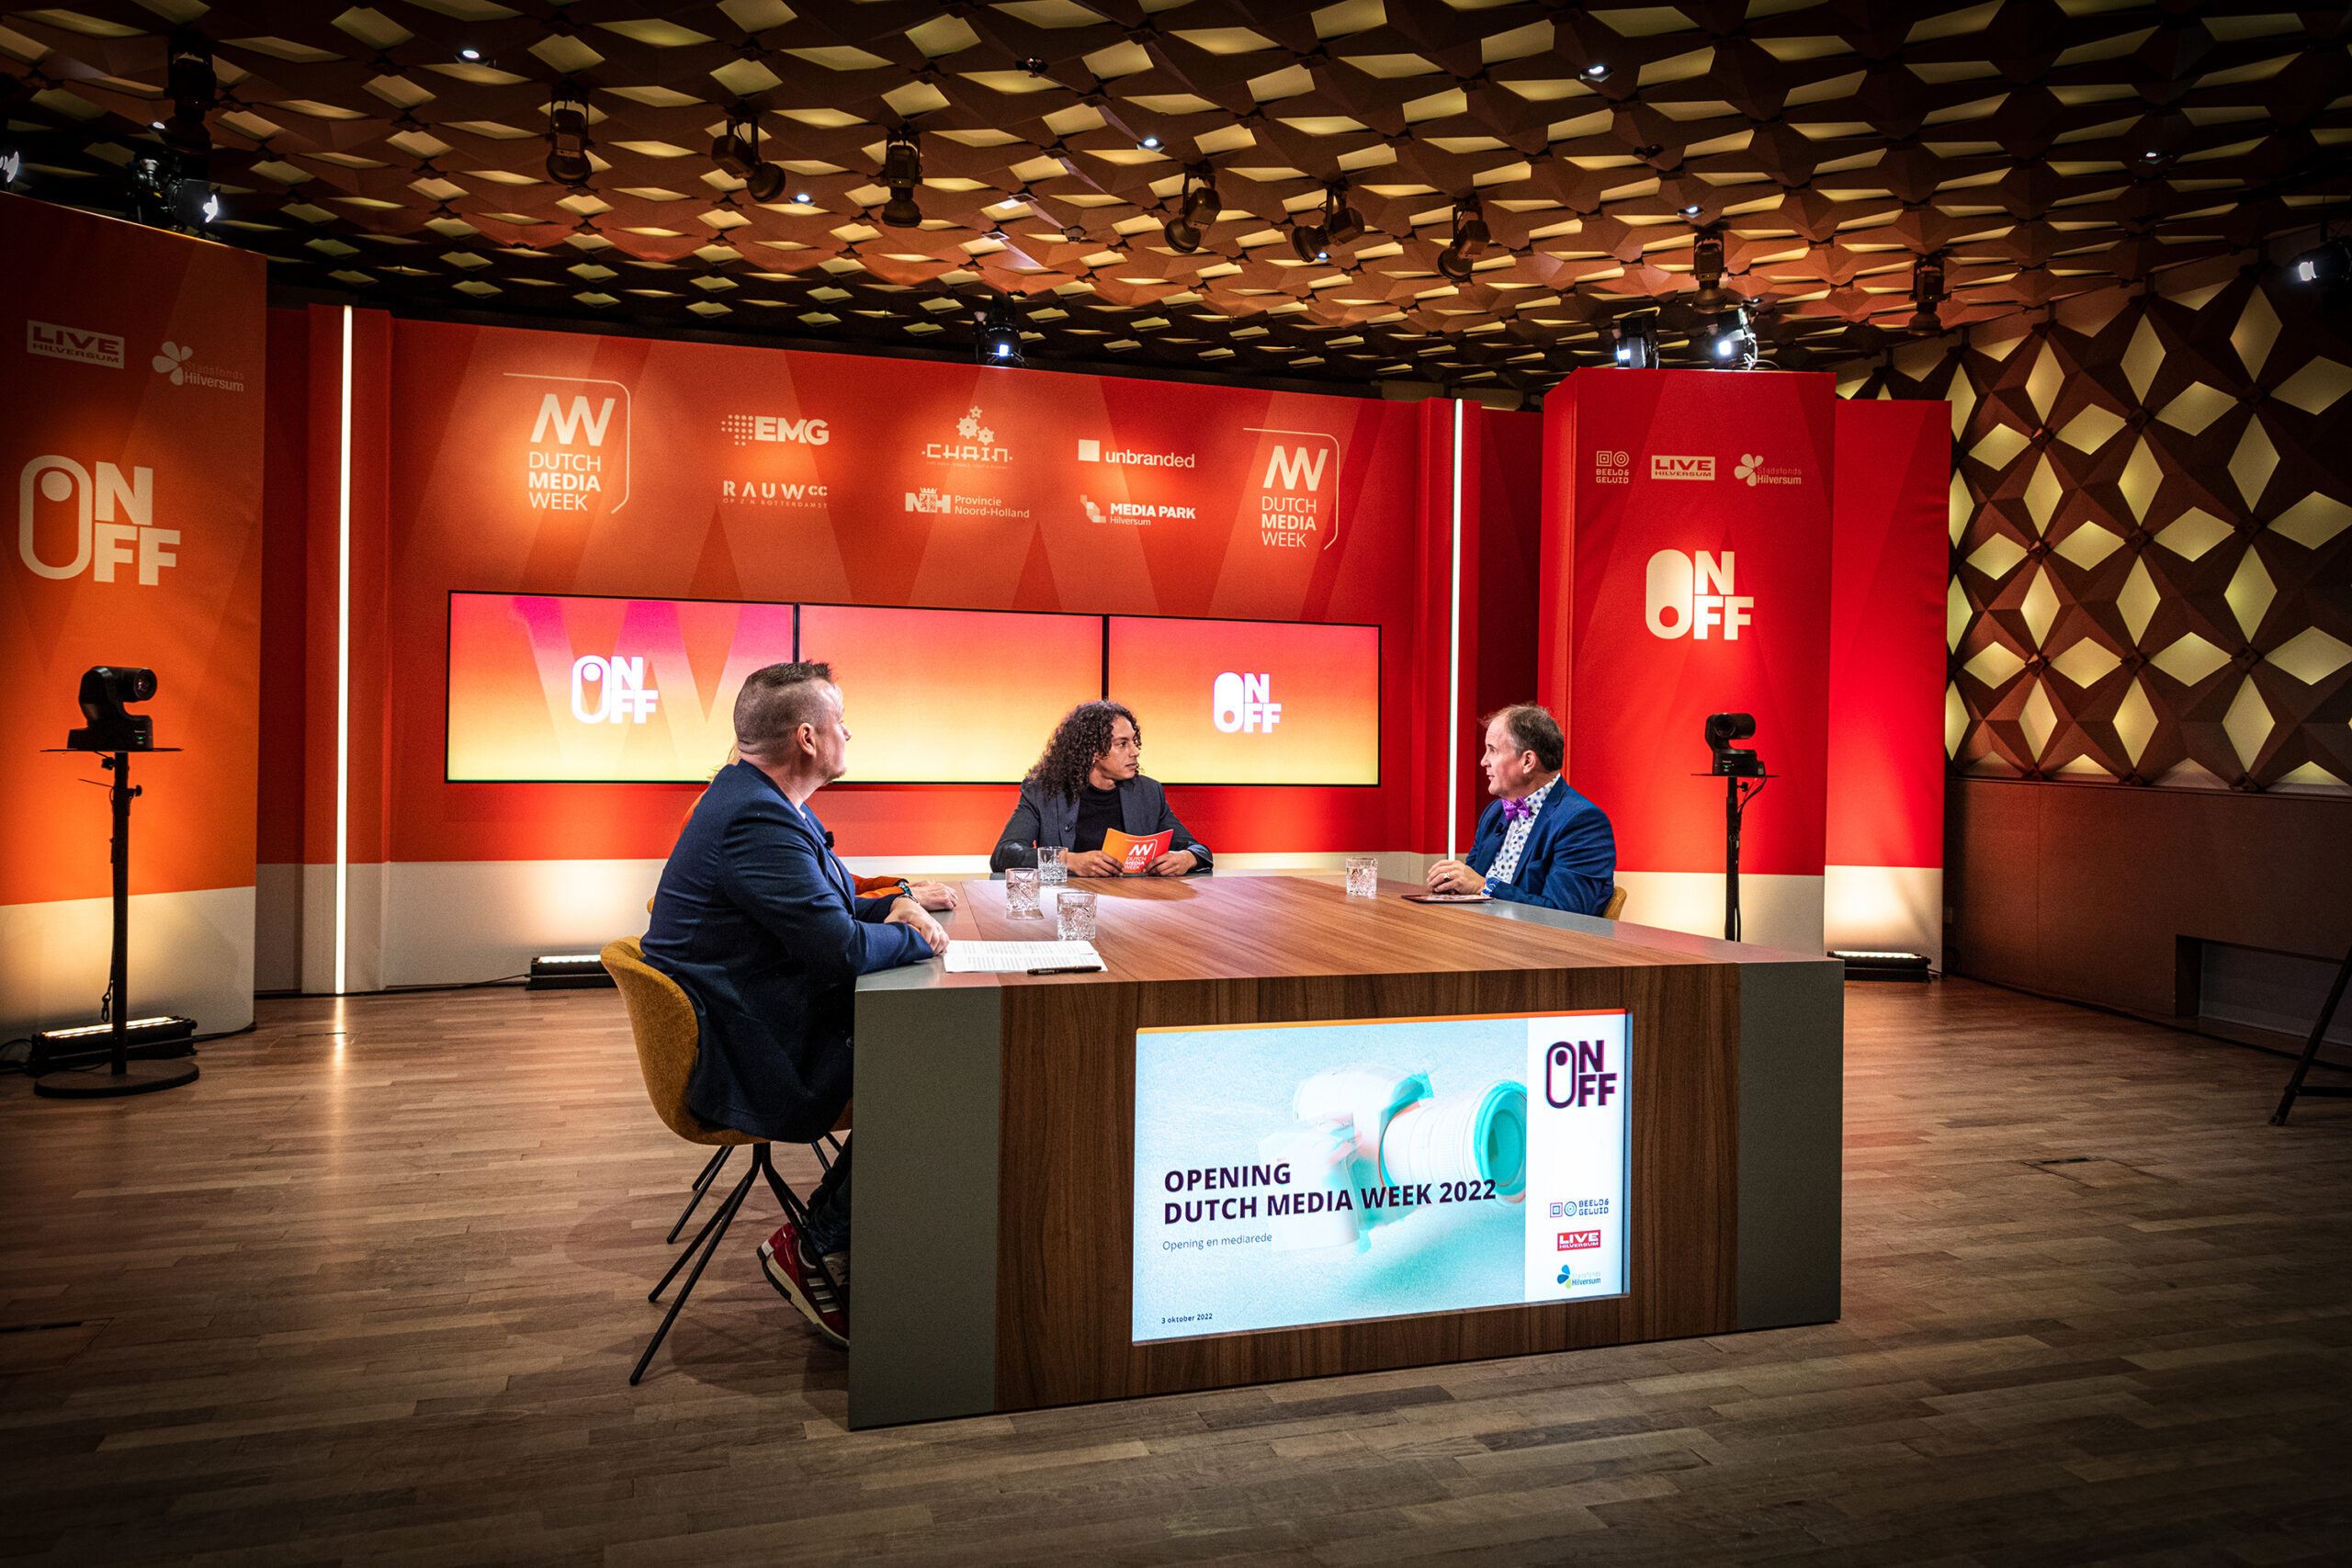 Dutch Media Week 2022 geopend met Mediarede